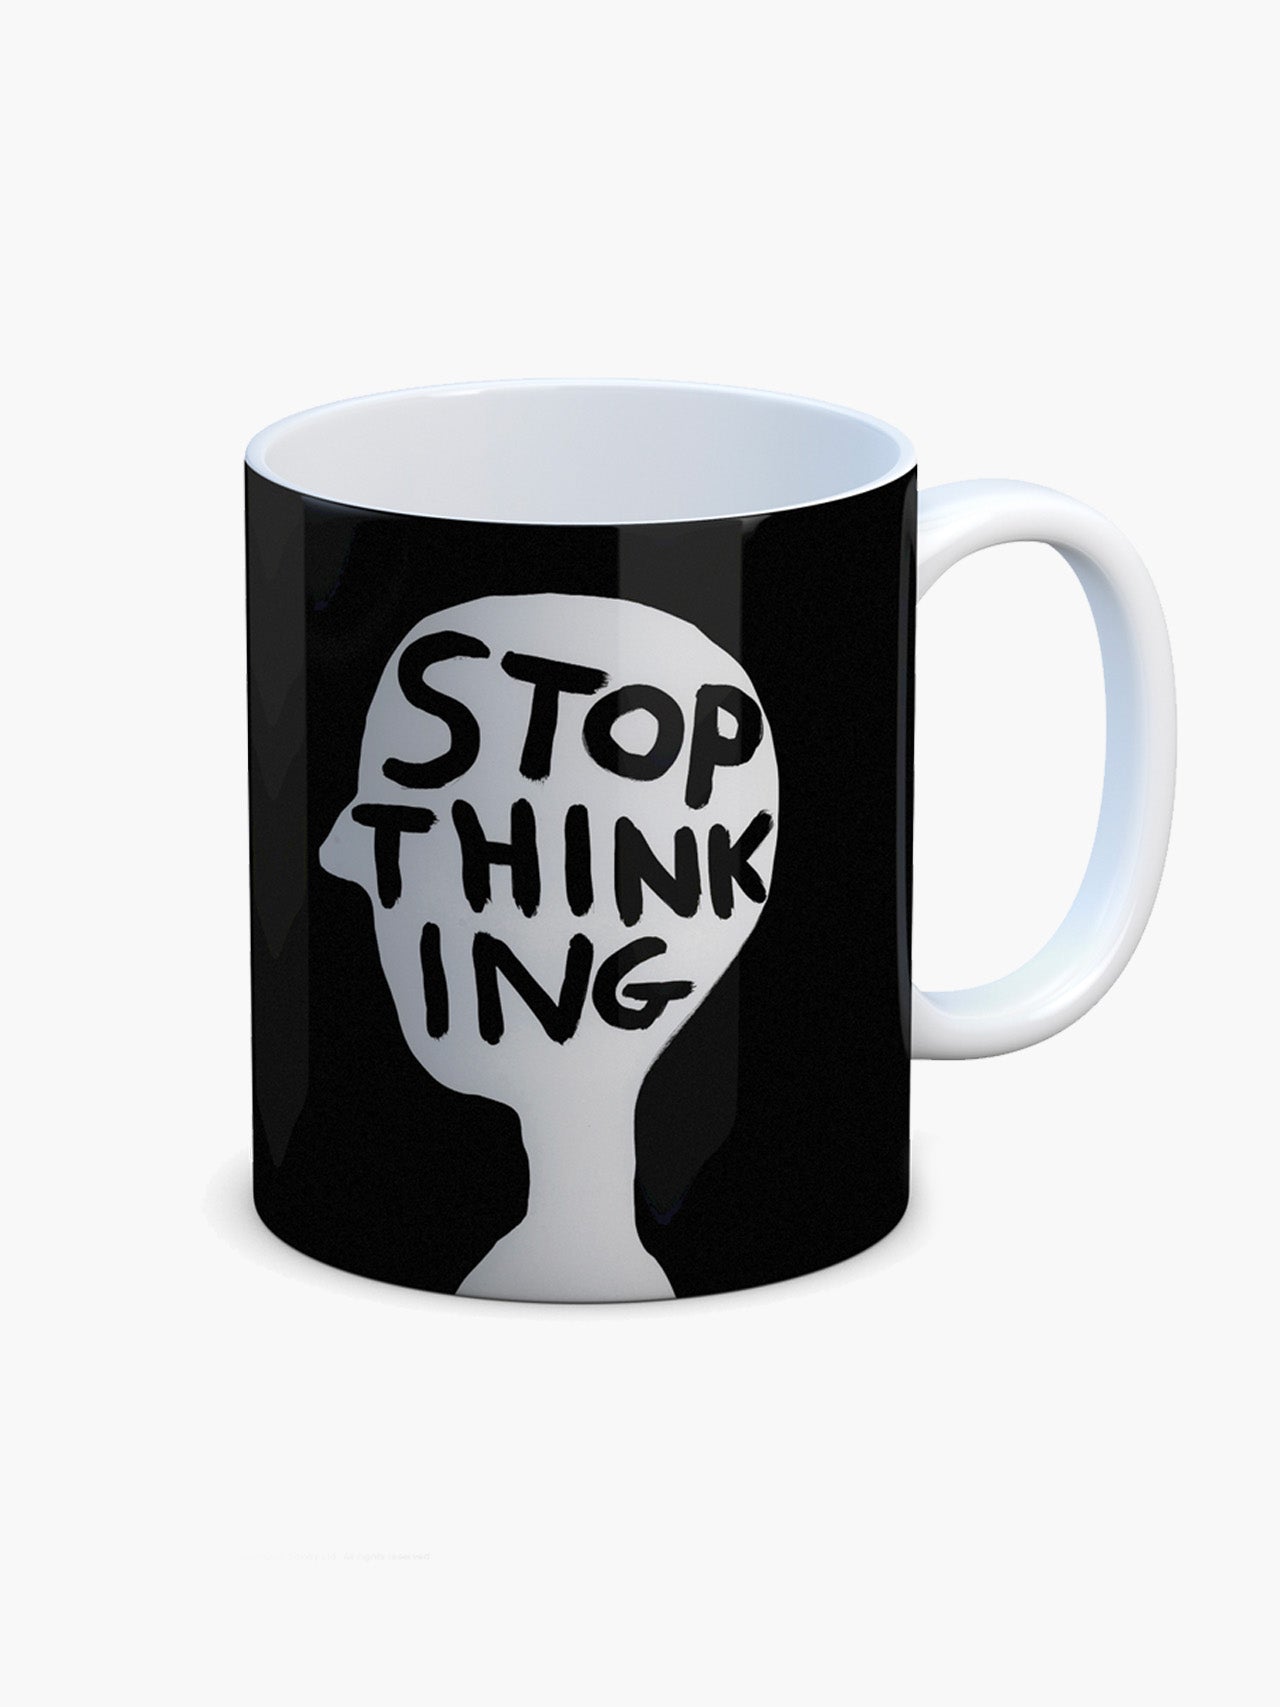 Stop Thinking Mug x David Shrigley